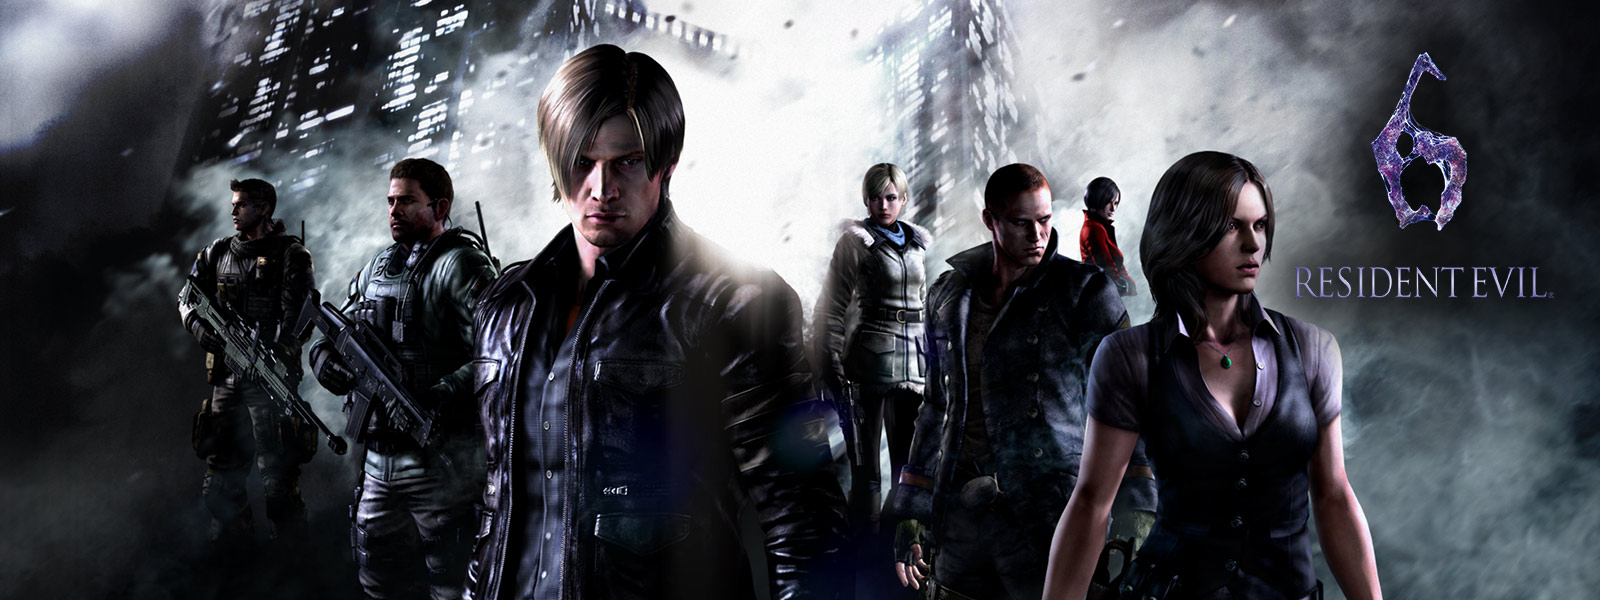 Resident Evil 6, všechny postavy hry Resident Evil stojící před zlověstnými mrakodrapy